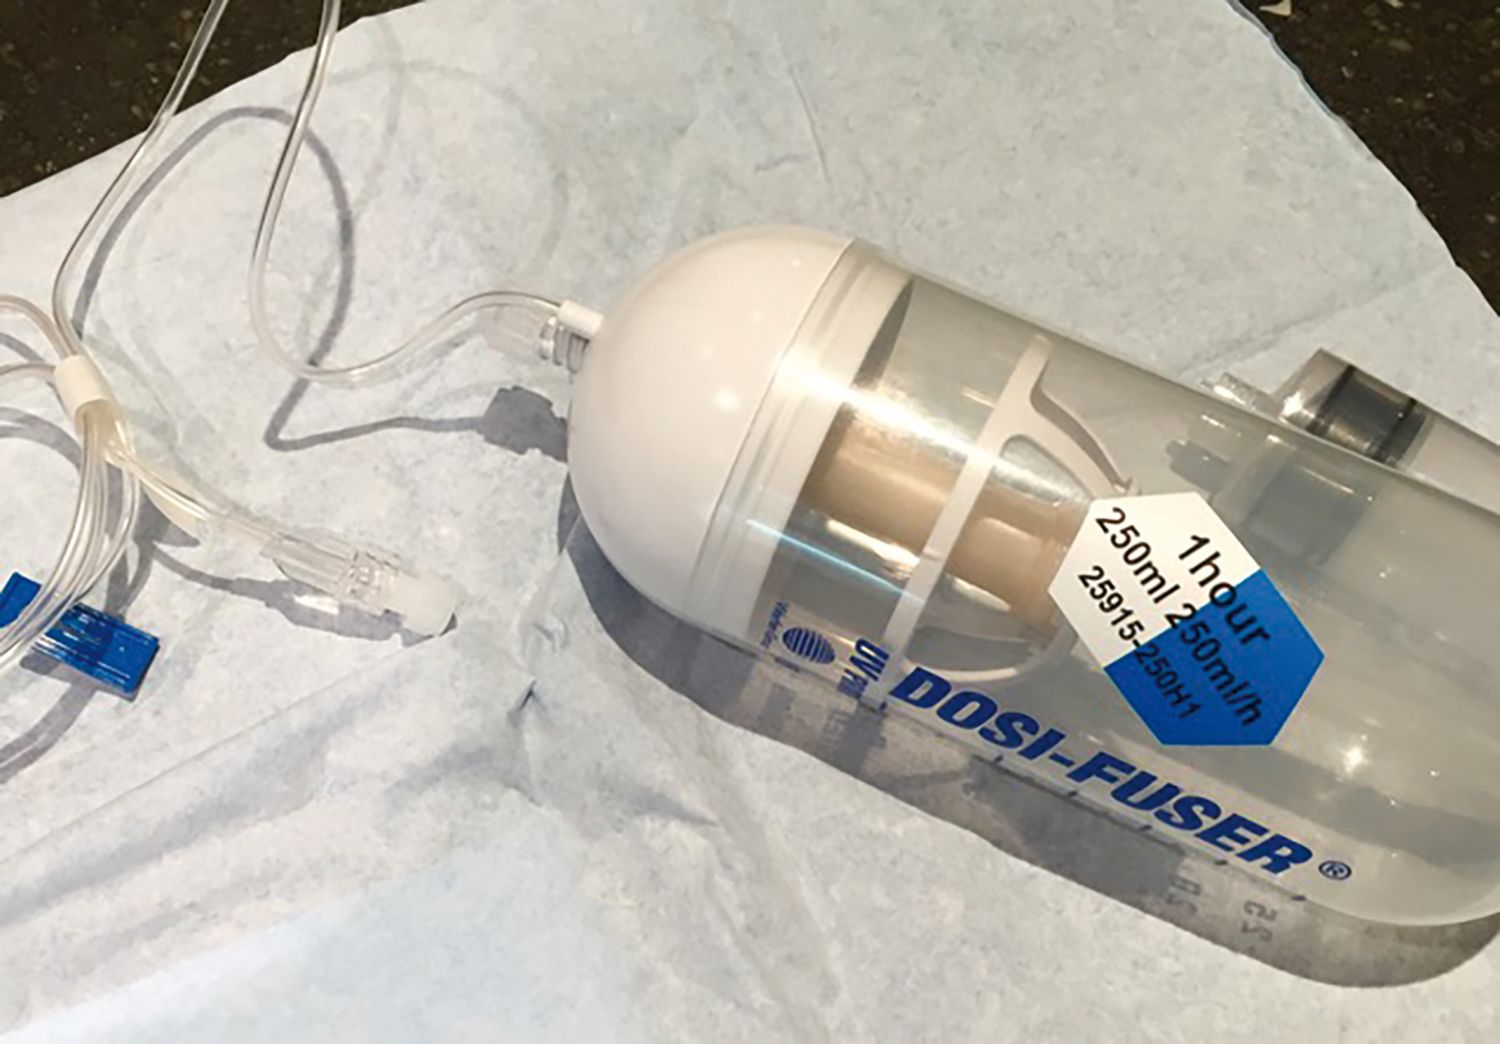 Pompă elastomer pentru perfuzie intravenoasă continuă